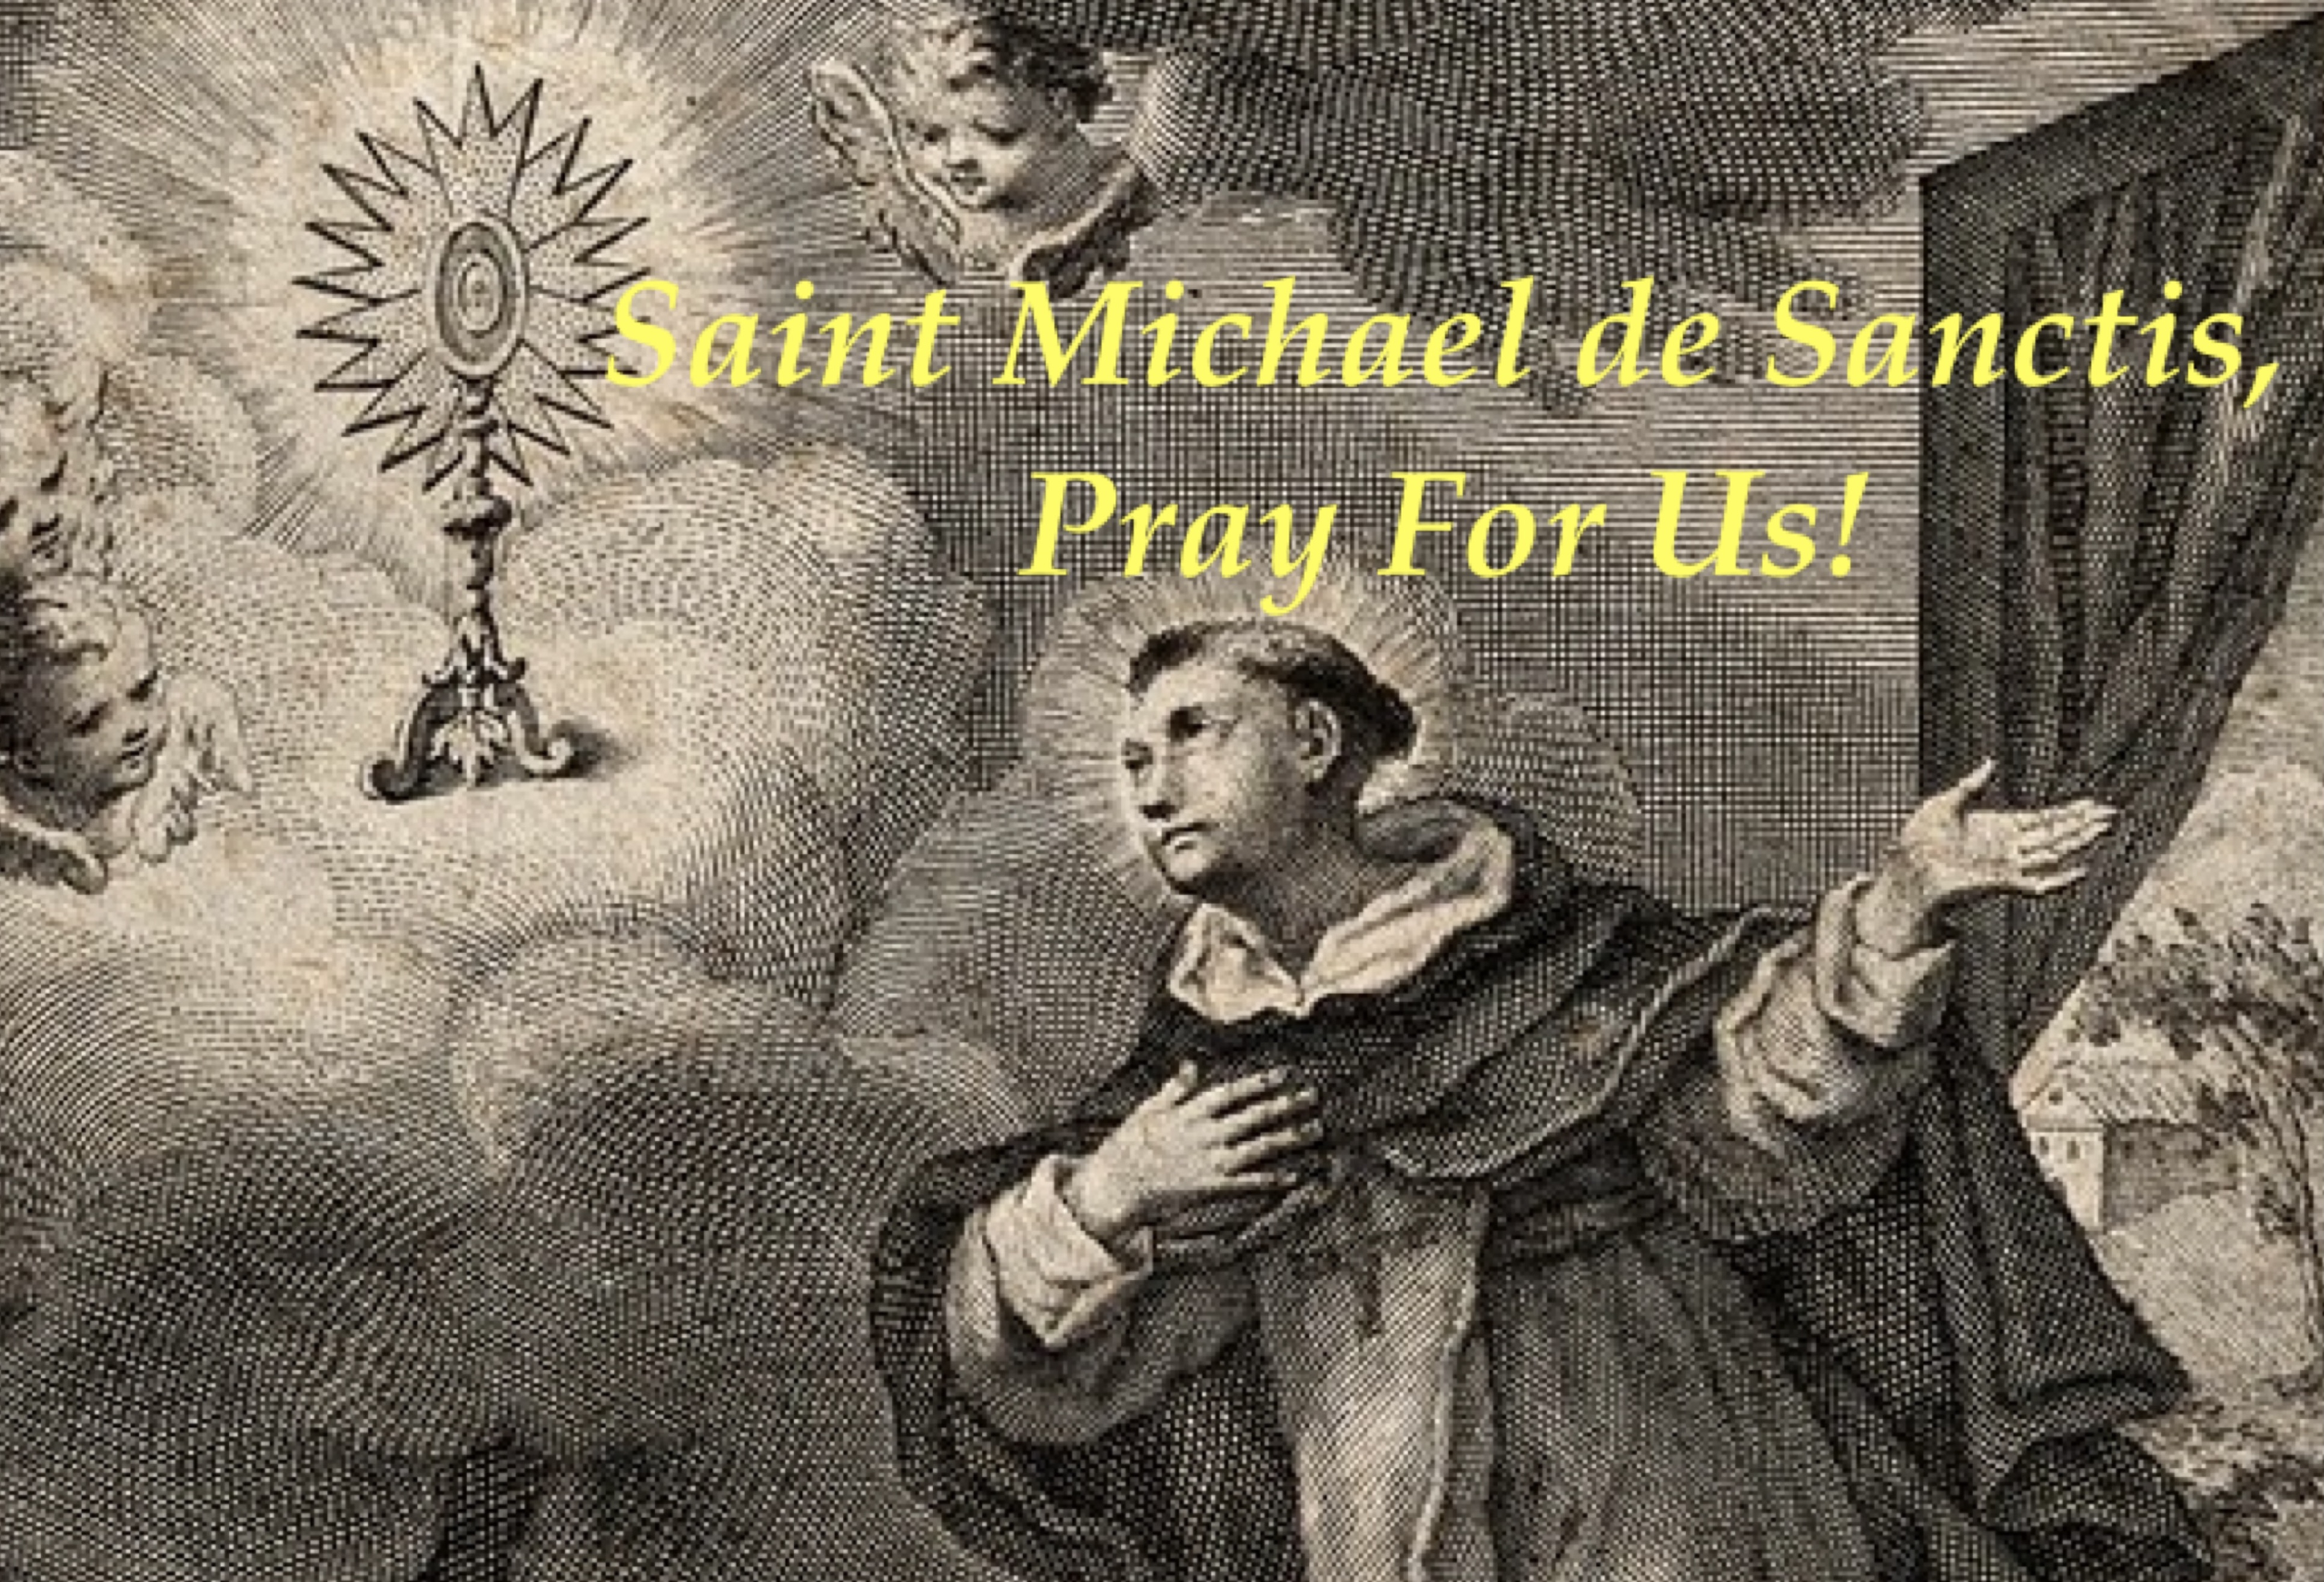 10th April - Saint Michael de Sanctis